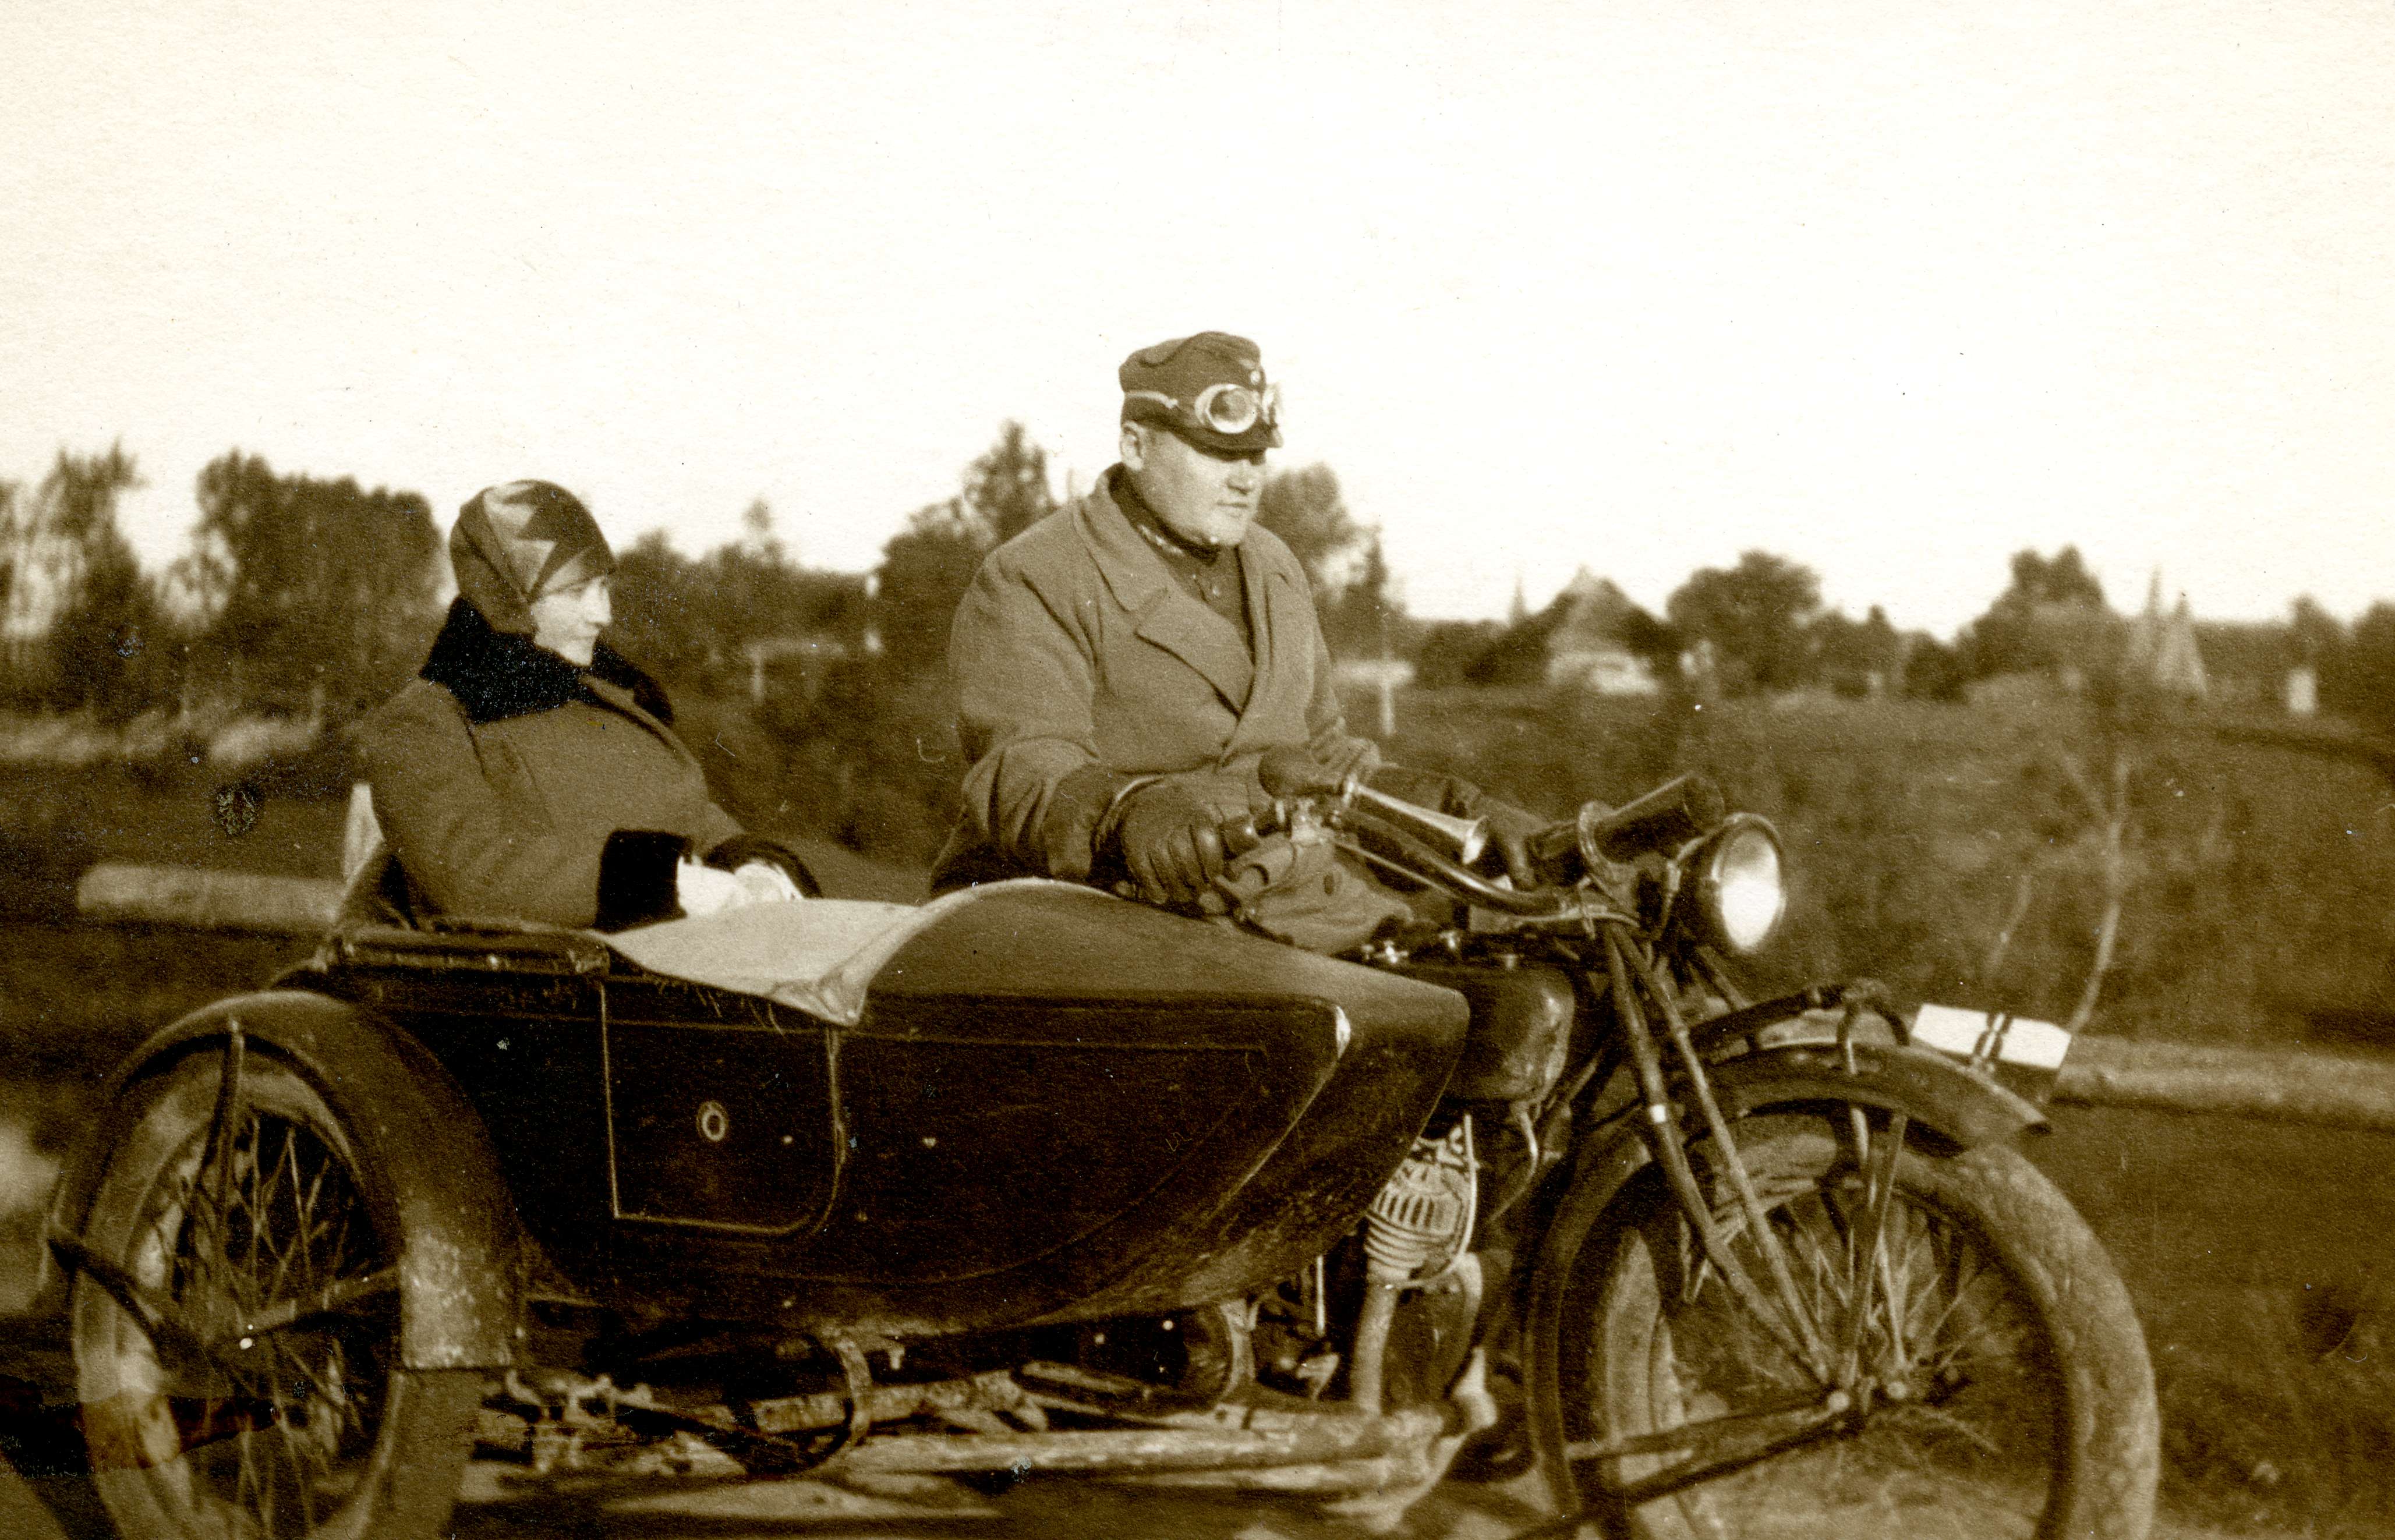 Sellel 1920. aastate lõpust pärit fotol hoiab Harley-Davidsoni külgkorviga mootorratta juhtrauda kaitseliidu pealiku vormi kandev mees, kelle kõrvale korvi on paigutatud sündsal moel daam. 1920. ja 1930. aastatel oli mootorratas odavam ja kättesaadavam liiklusvahend kui auto. Kui enamik autodest oli tollal registreeritud linnades (eriti Tallinnas), kasutati suuremat osa mootorrattaid siiski maal. Sellele vaatamata osutati näiteks linnades autost odavamat taksoteenust ka külgkorviga mootorratastega (Foto: To